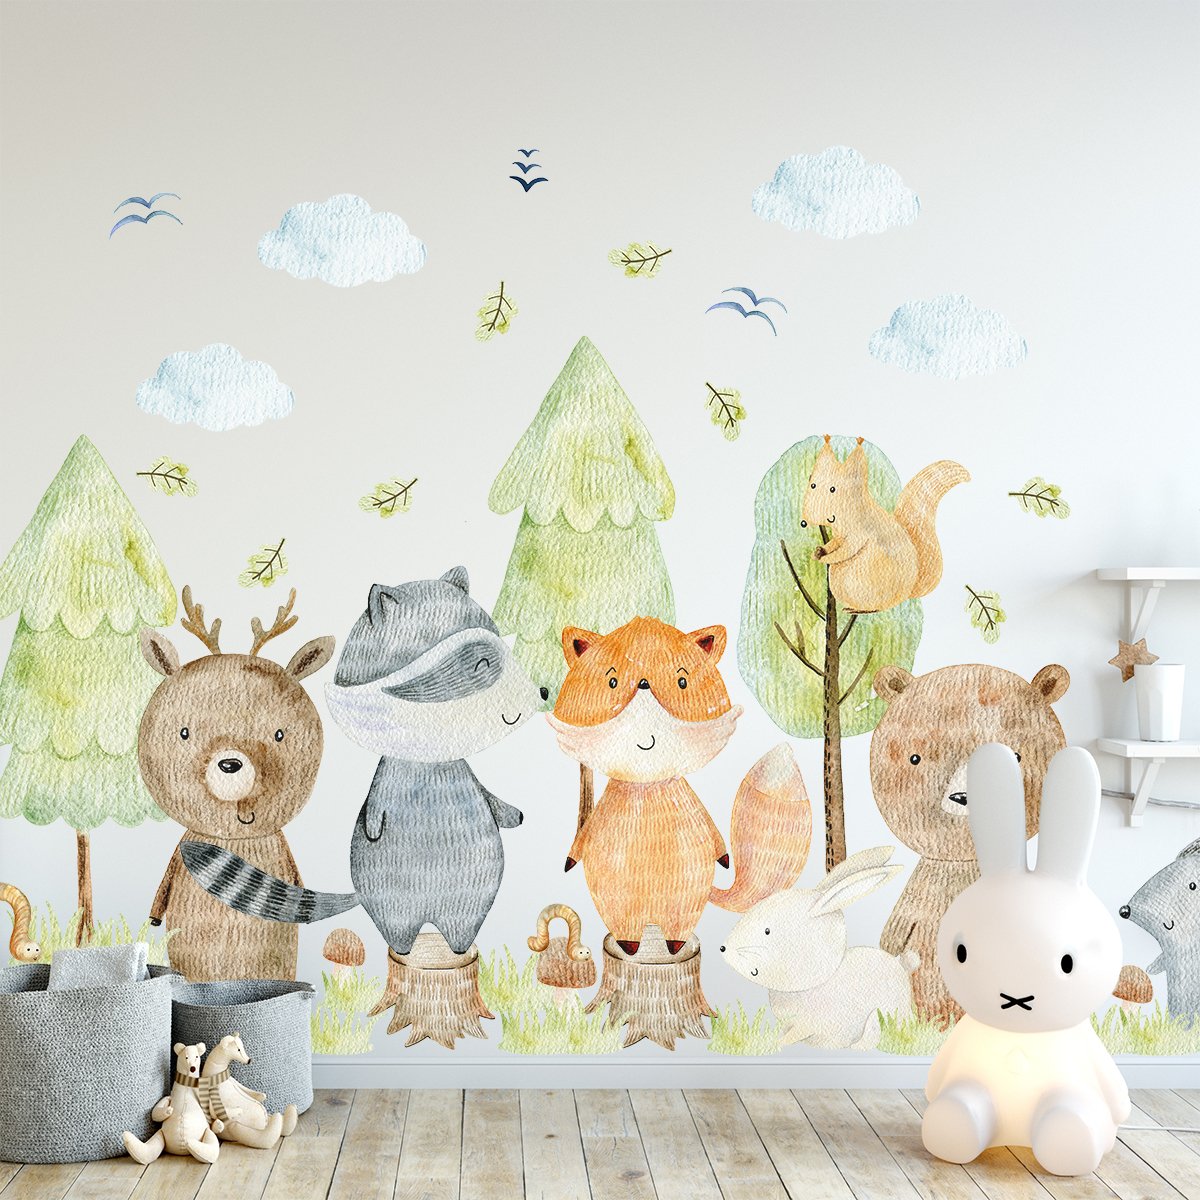 Naklejki na ścianę dla dzieci zielone drzewa i zwierzęta leśne naklejone na ścianie w pokoju małego dziecka